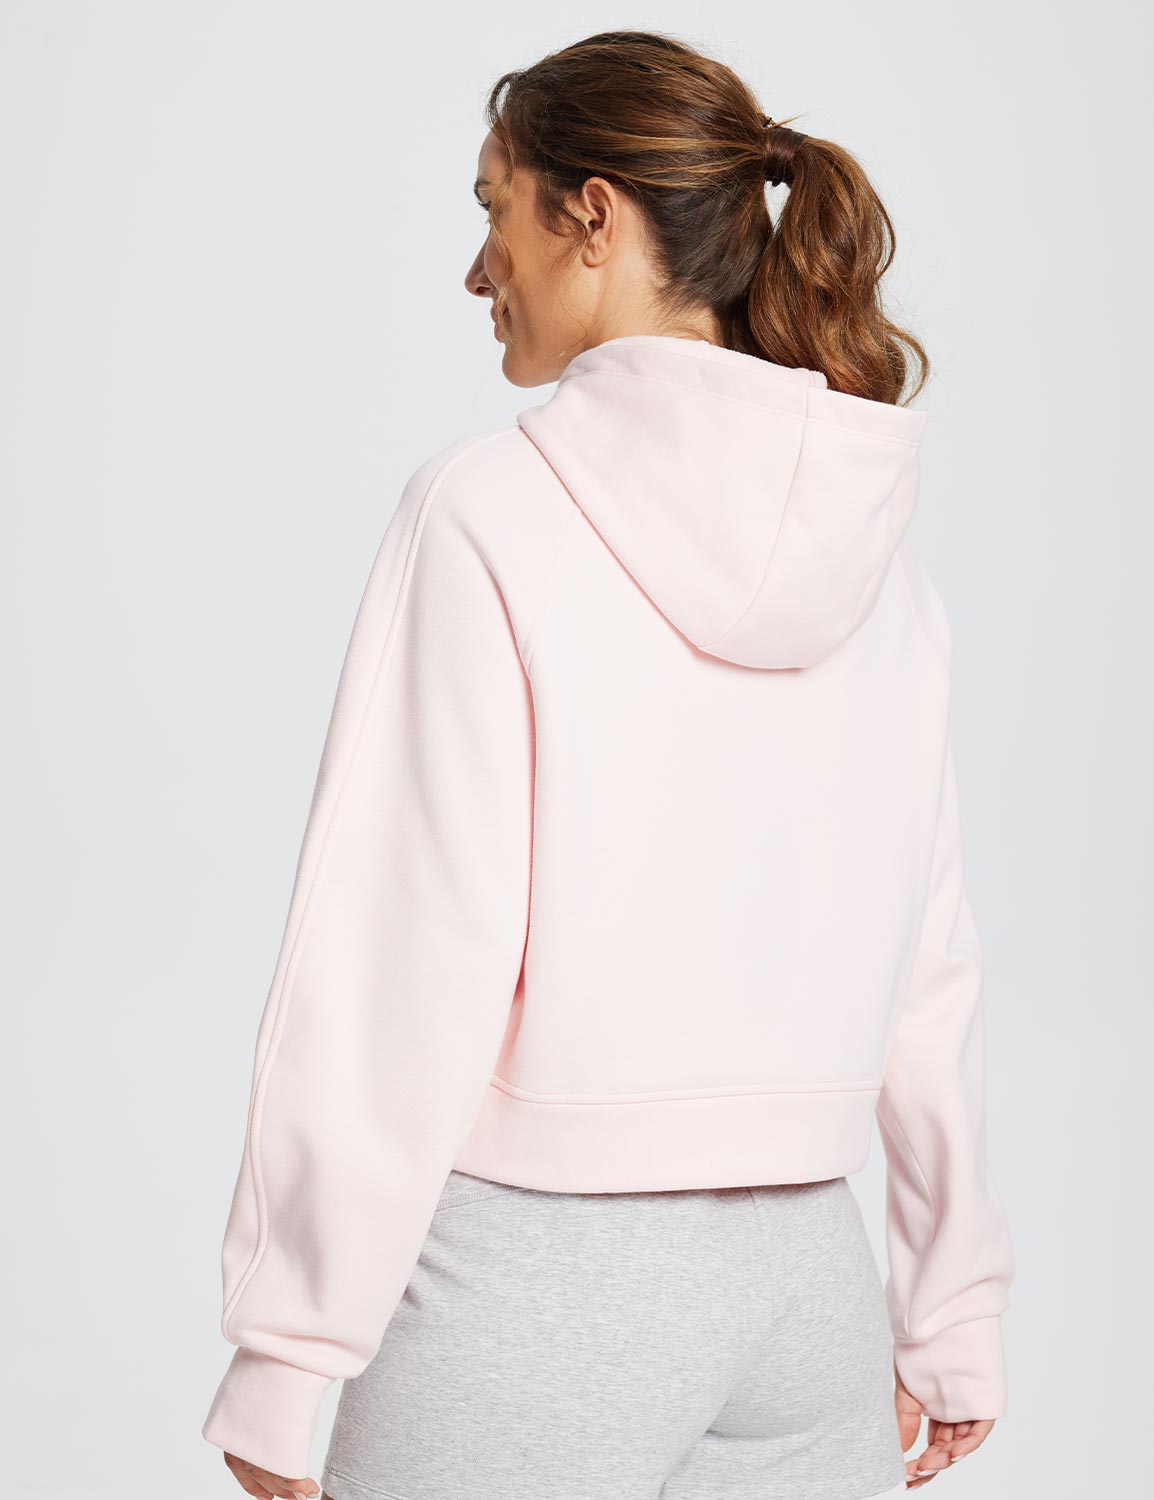 Baleaf Women's Evergreen Cotton Half-Zip Pullover dbd091 Pink Back